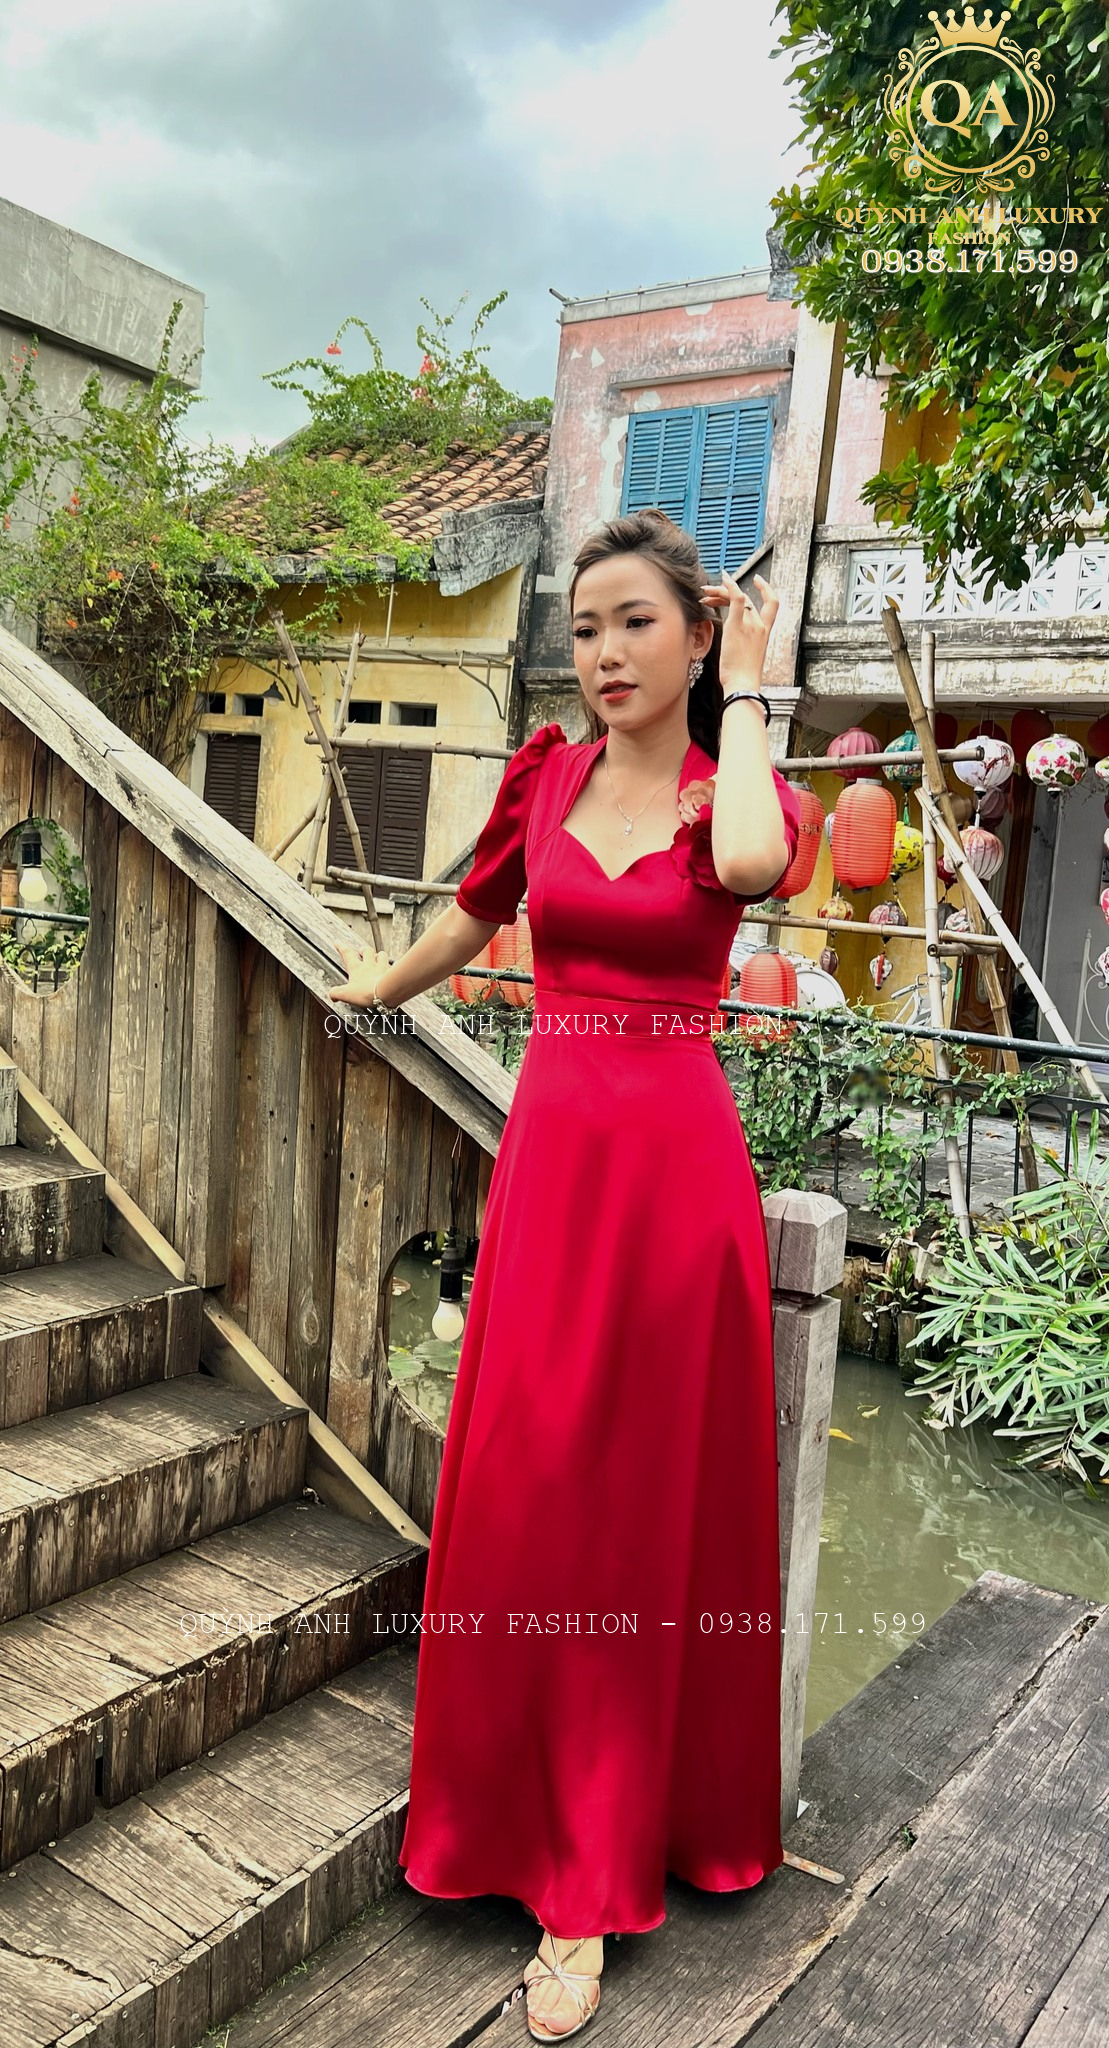 Kinh ngạc với bí mật đằng sau của đầm dạ hội trung niên Quỳnh Anh Luxury Fashion